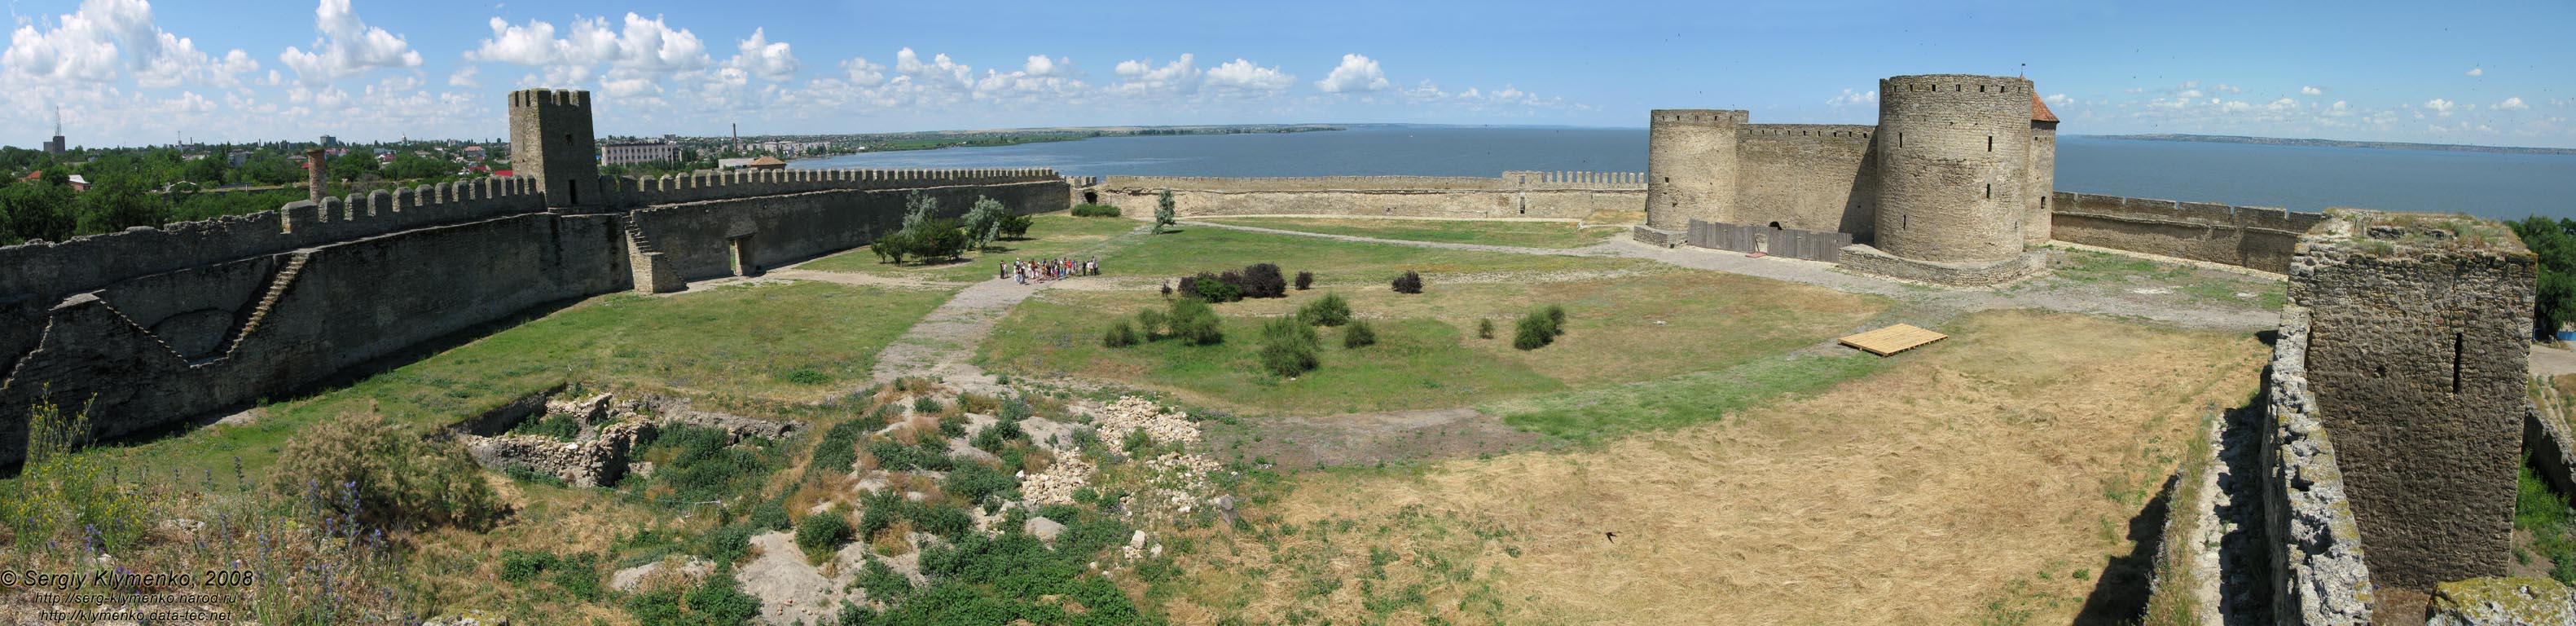 Белгород-Днестровская крепость, вид "Гарнизонного" двора с крепостных стен (панорама ~120°).